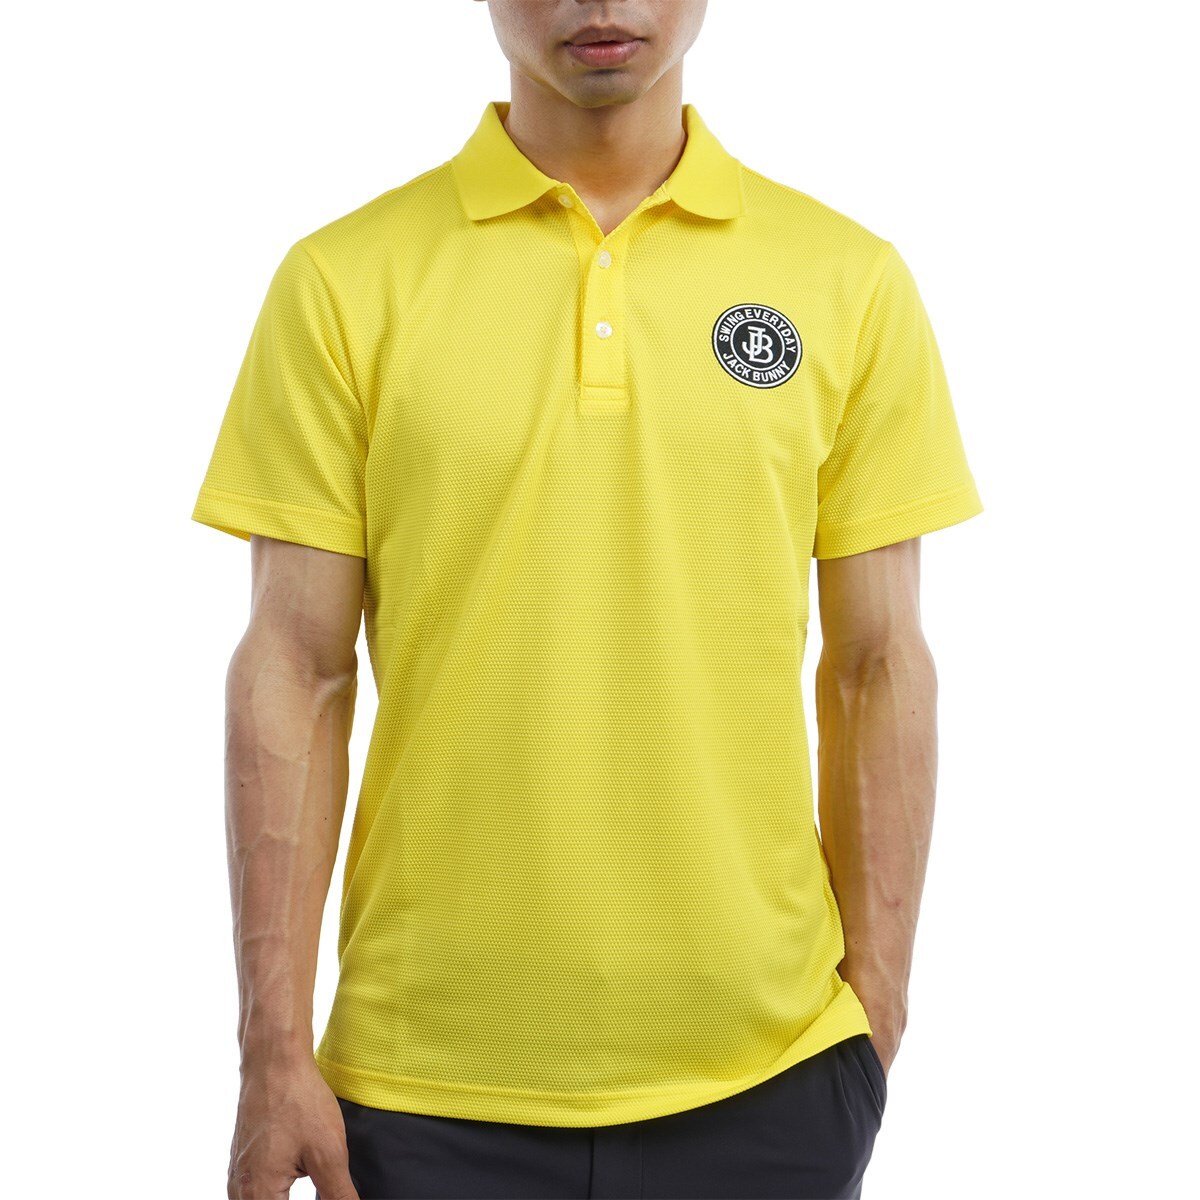 ラッピング無料】 ジャックバニー ゴルフウェア レディース ポロシャツ 半袖 黄 サイズ2